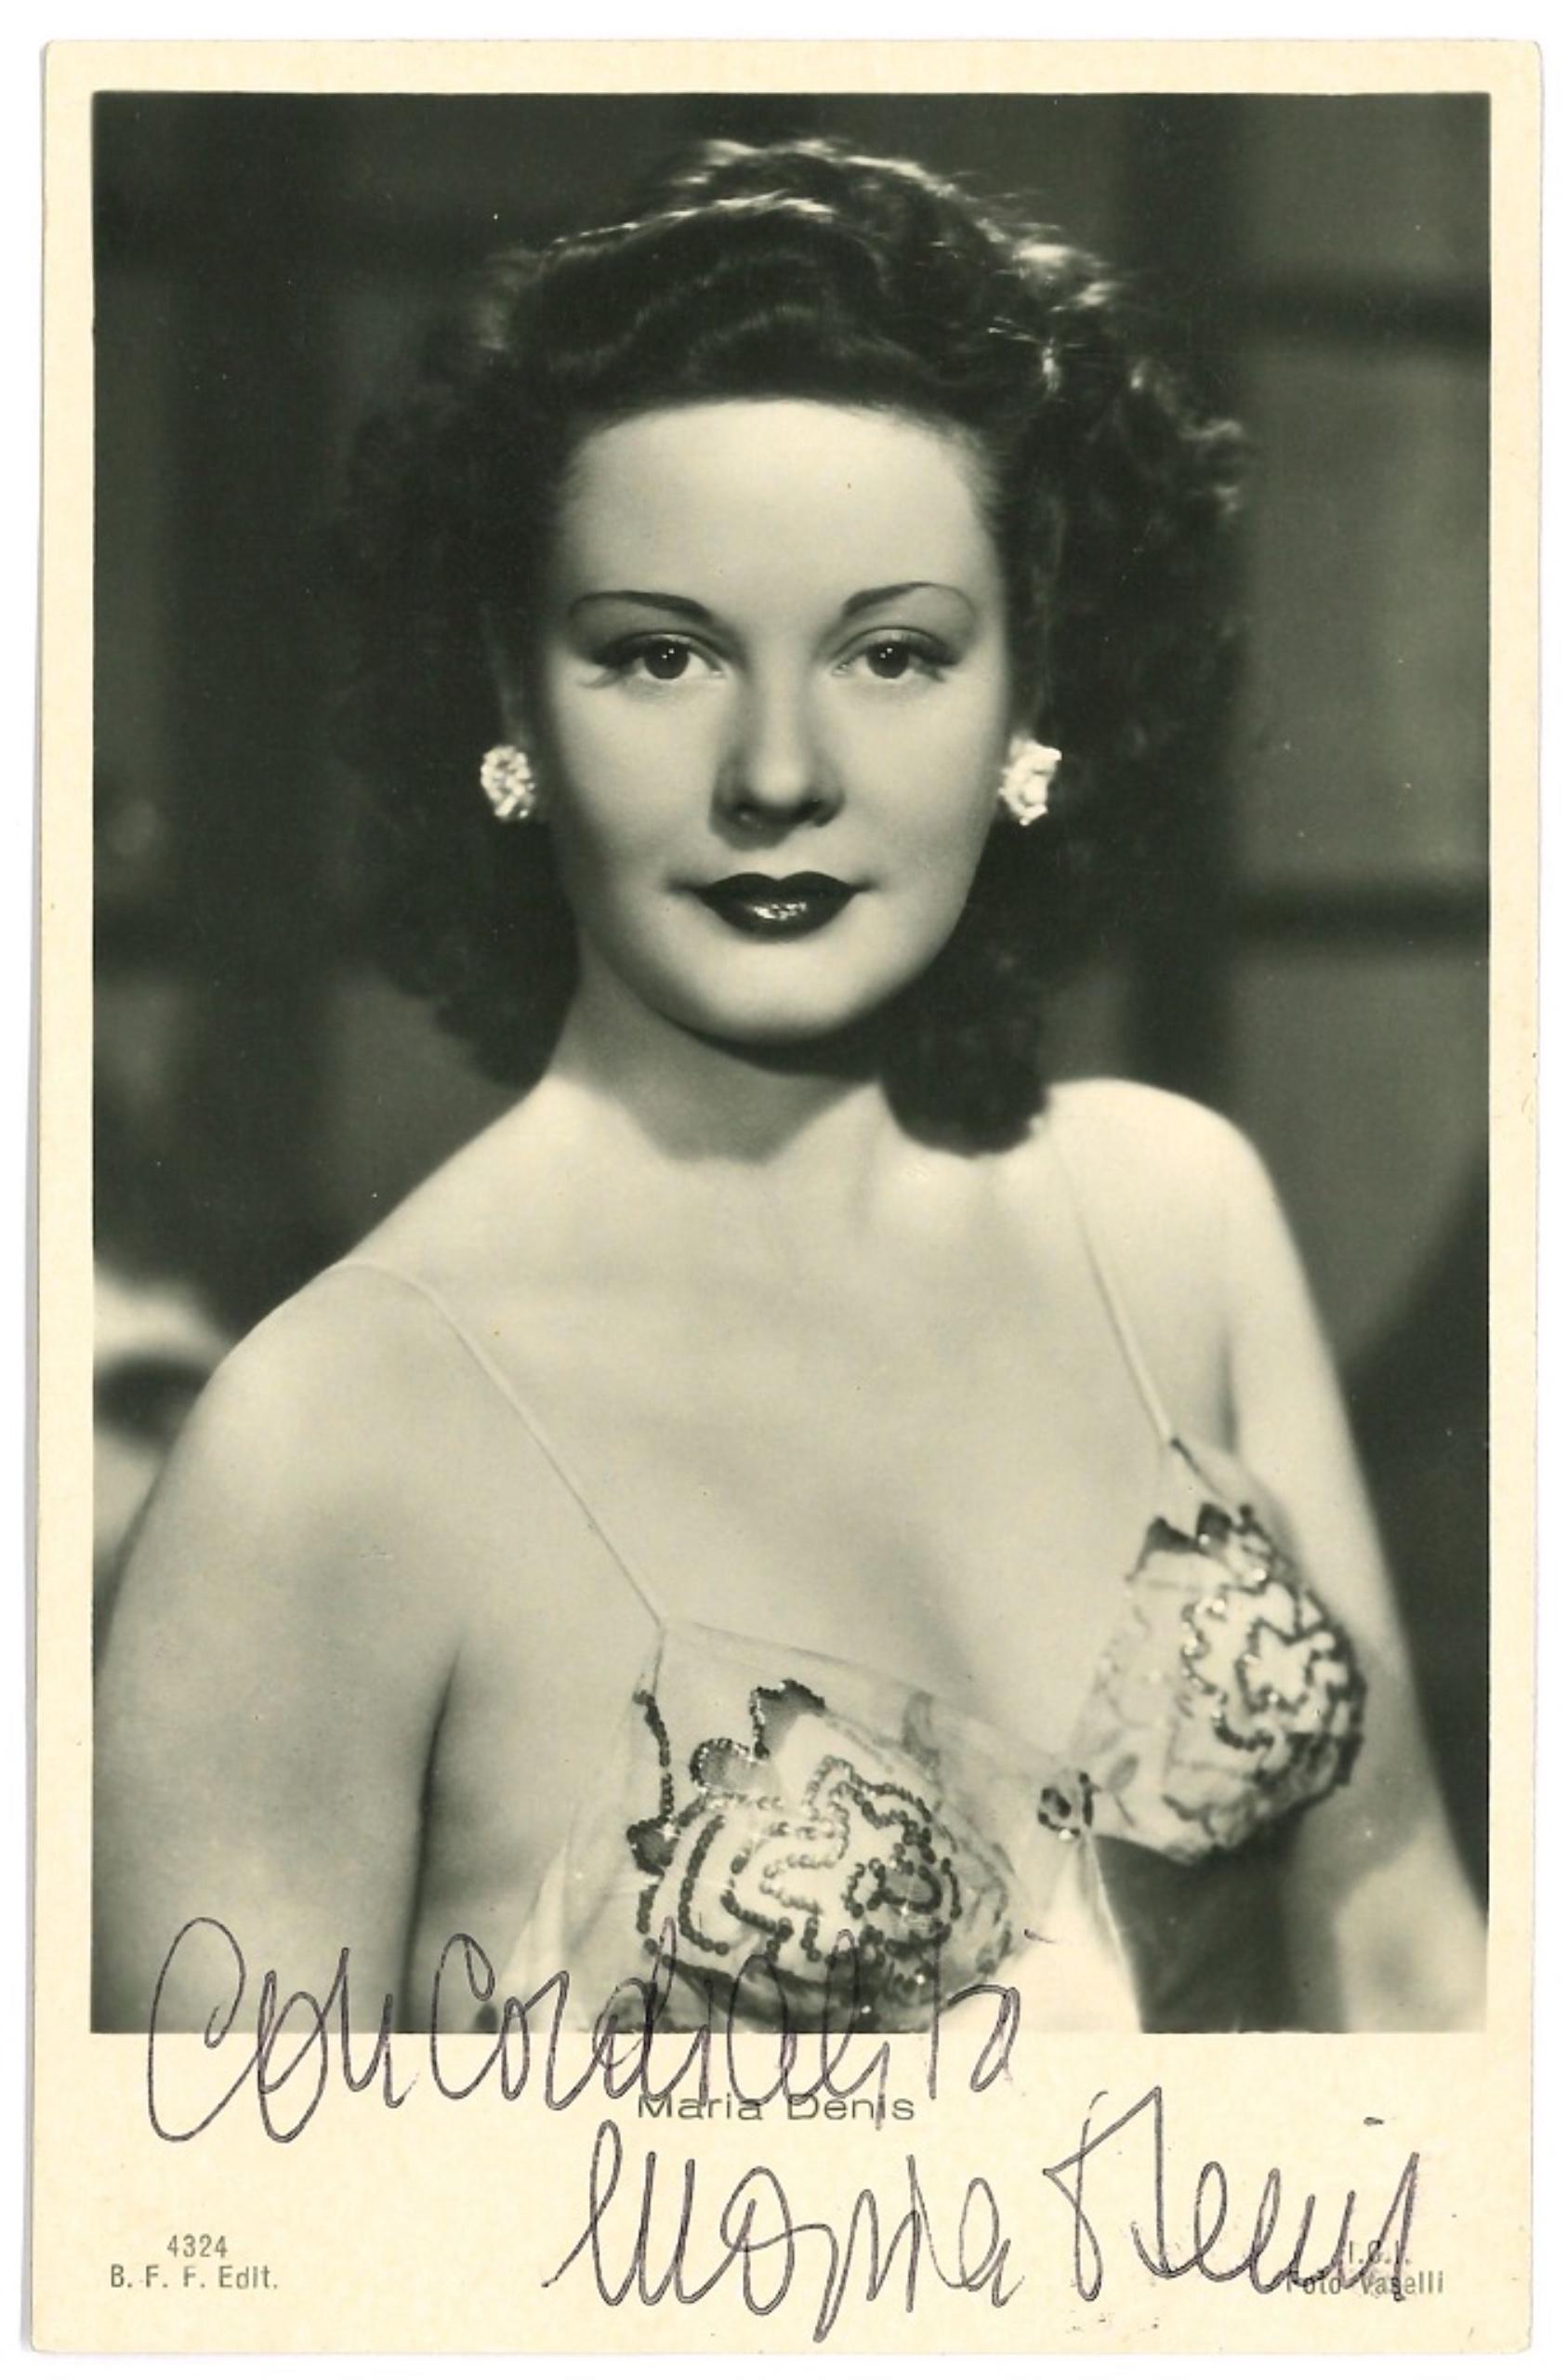 Unknown Portrait Photograph - Autographed Portrait of Maria Denis - Original b/w Postcard - 1960s